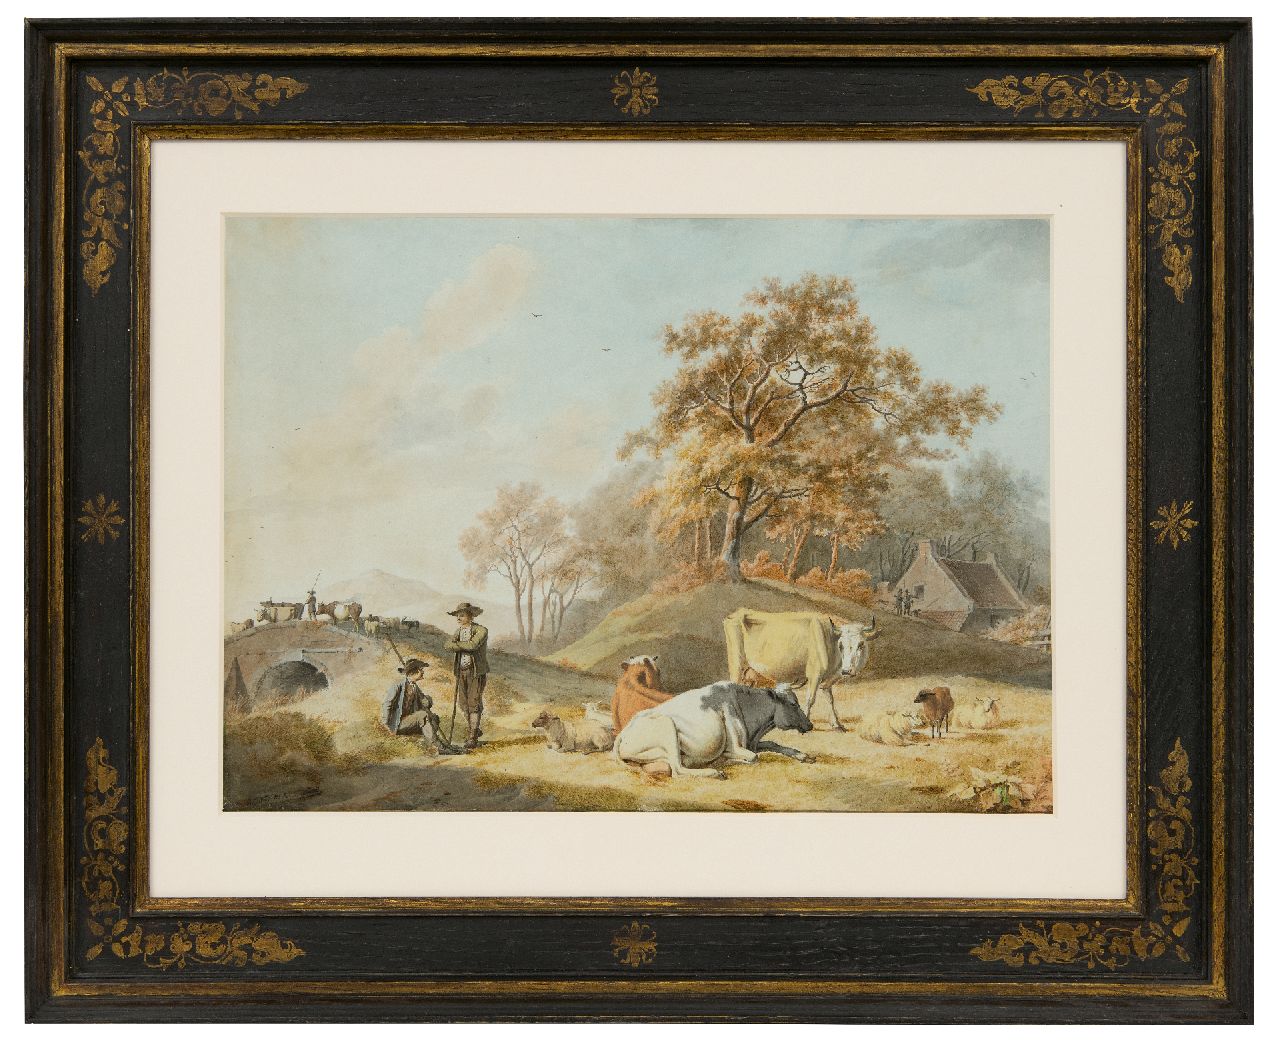 Koekkoek B.C.  | Barend Cornelis Koekkoek | Aquarellen en tekeningen te koop aangeboden | Arcadisch landschap met herders en vee, inkt en aquarel op papier 26,7 x 37,5 cm, gesigneerd linksonder en ca 1824